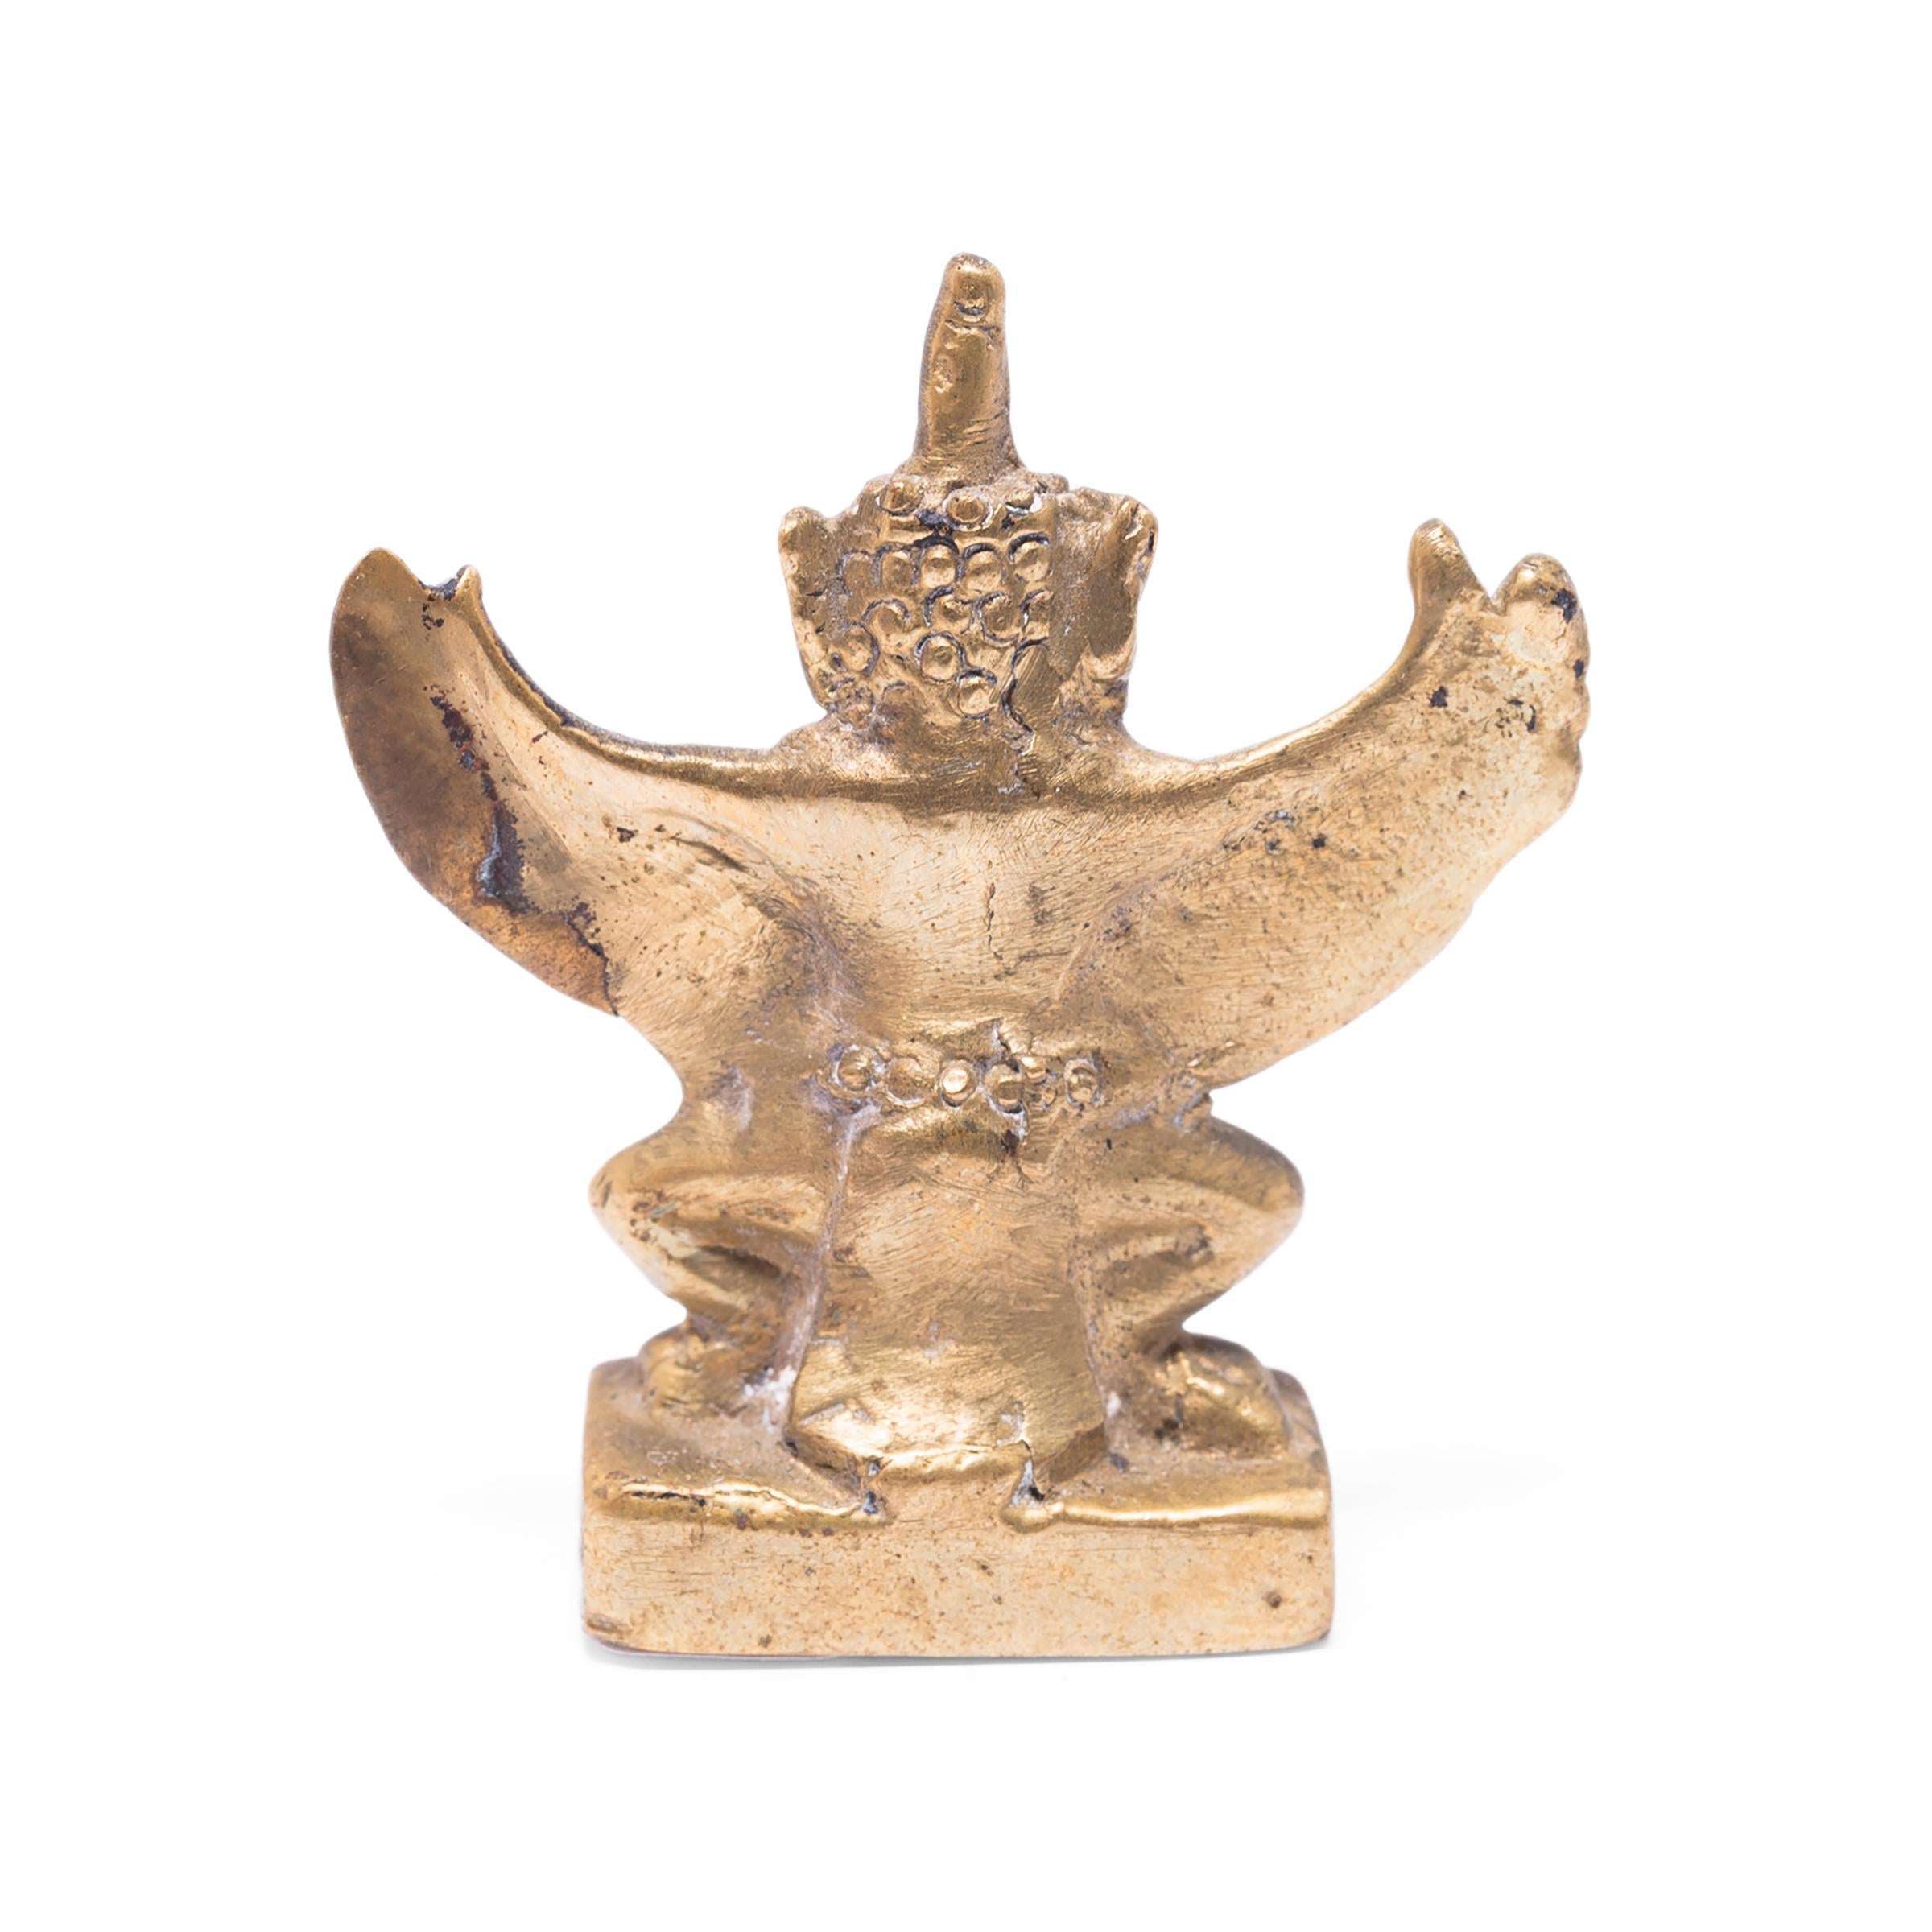 Diese zierliche Bronzefigur ist in der Form des Garuda gegossen, einem Halbgott und mythischen König der Vögel im hinduistischen und buddhistischen Glauben. Garuda, der halb Vogel, halb Mensch ist, ist ein mächtiger Beschützer und ein stets